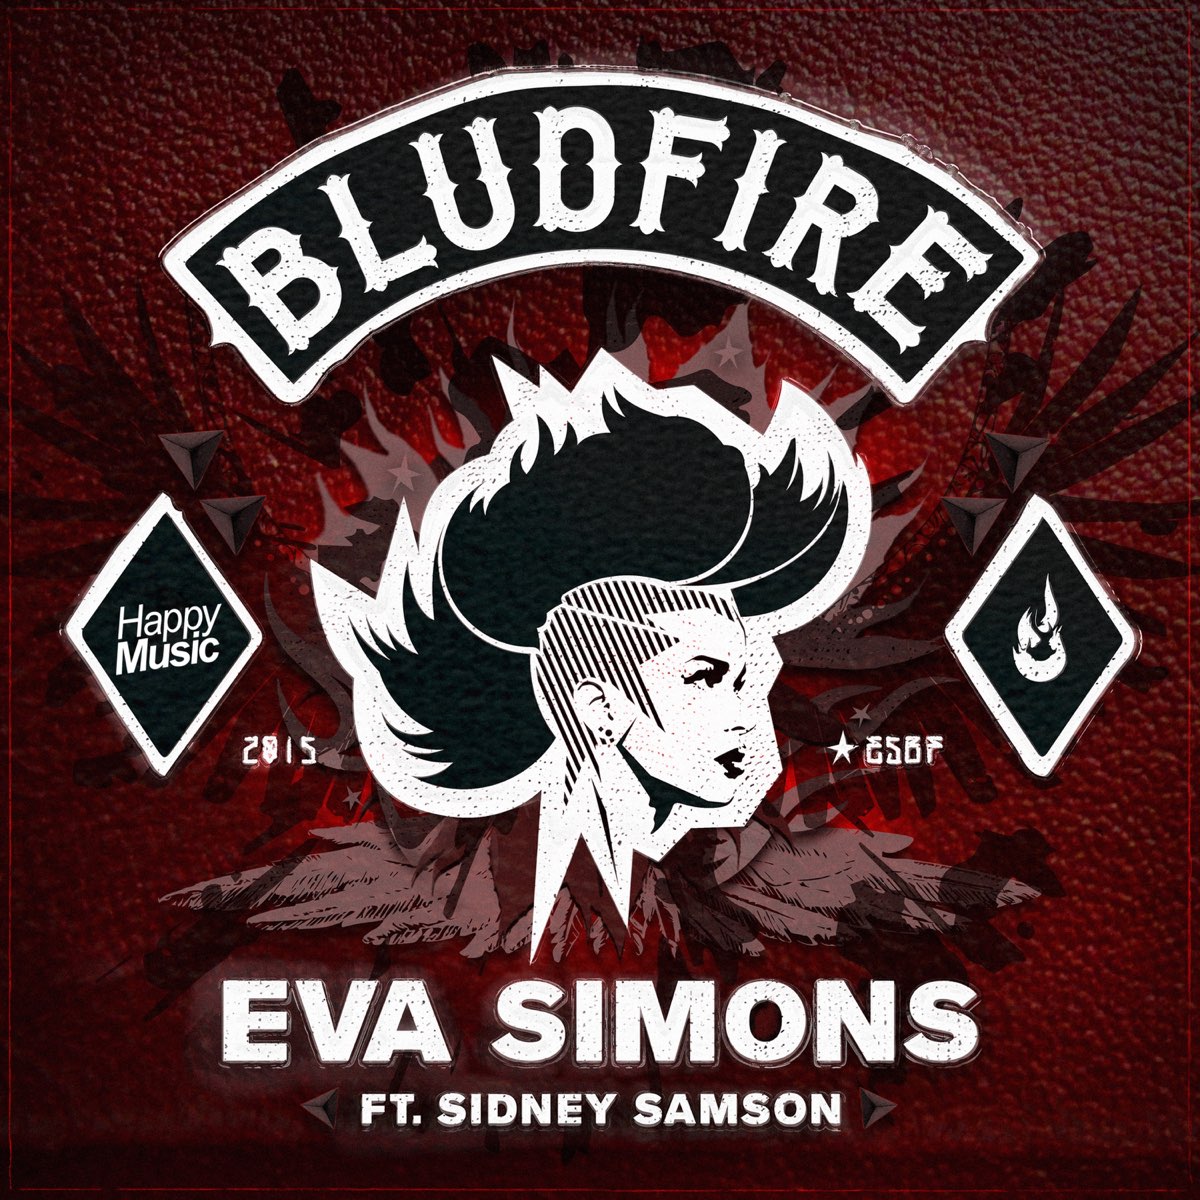 Eva Simons ft. featuring Sidney Samson Bludfire cover artwork